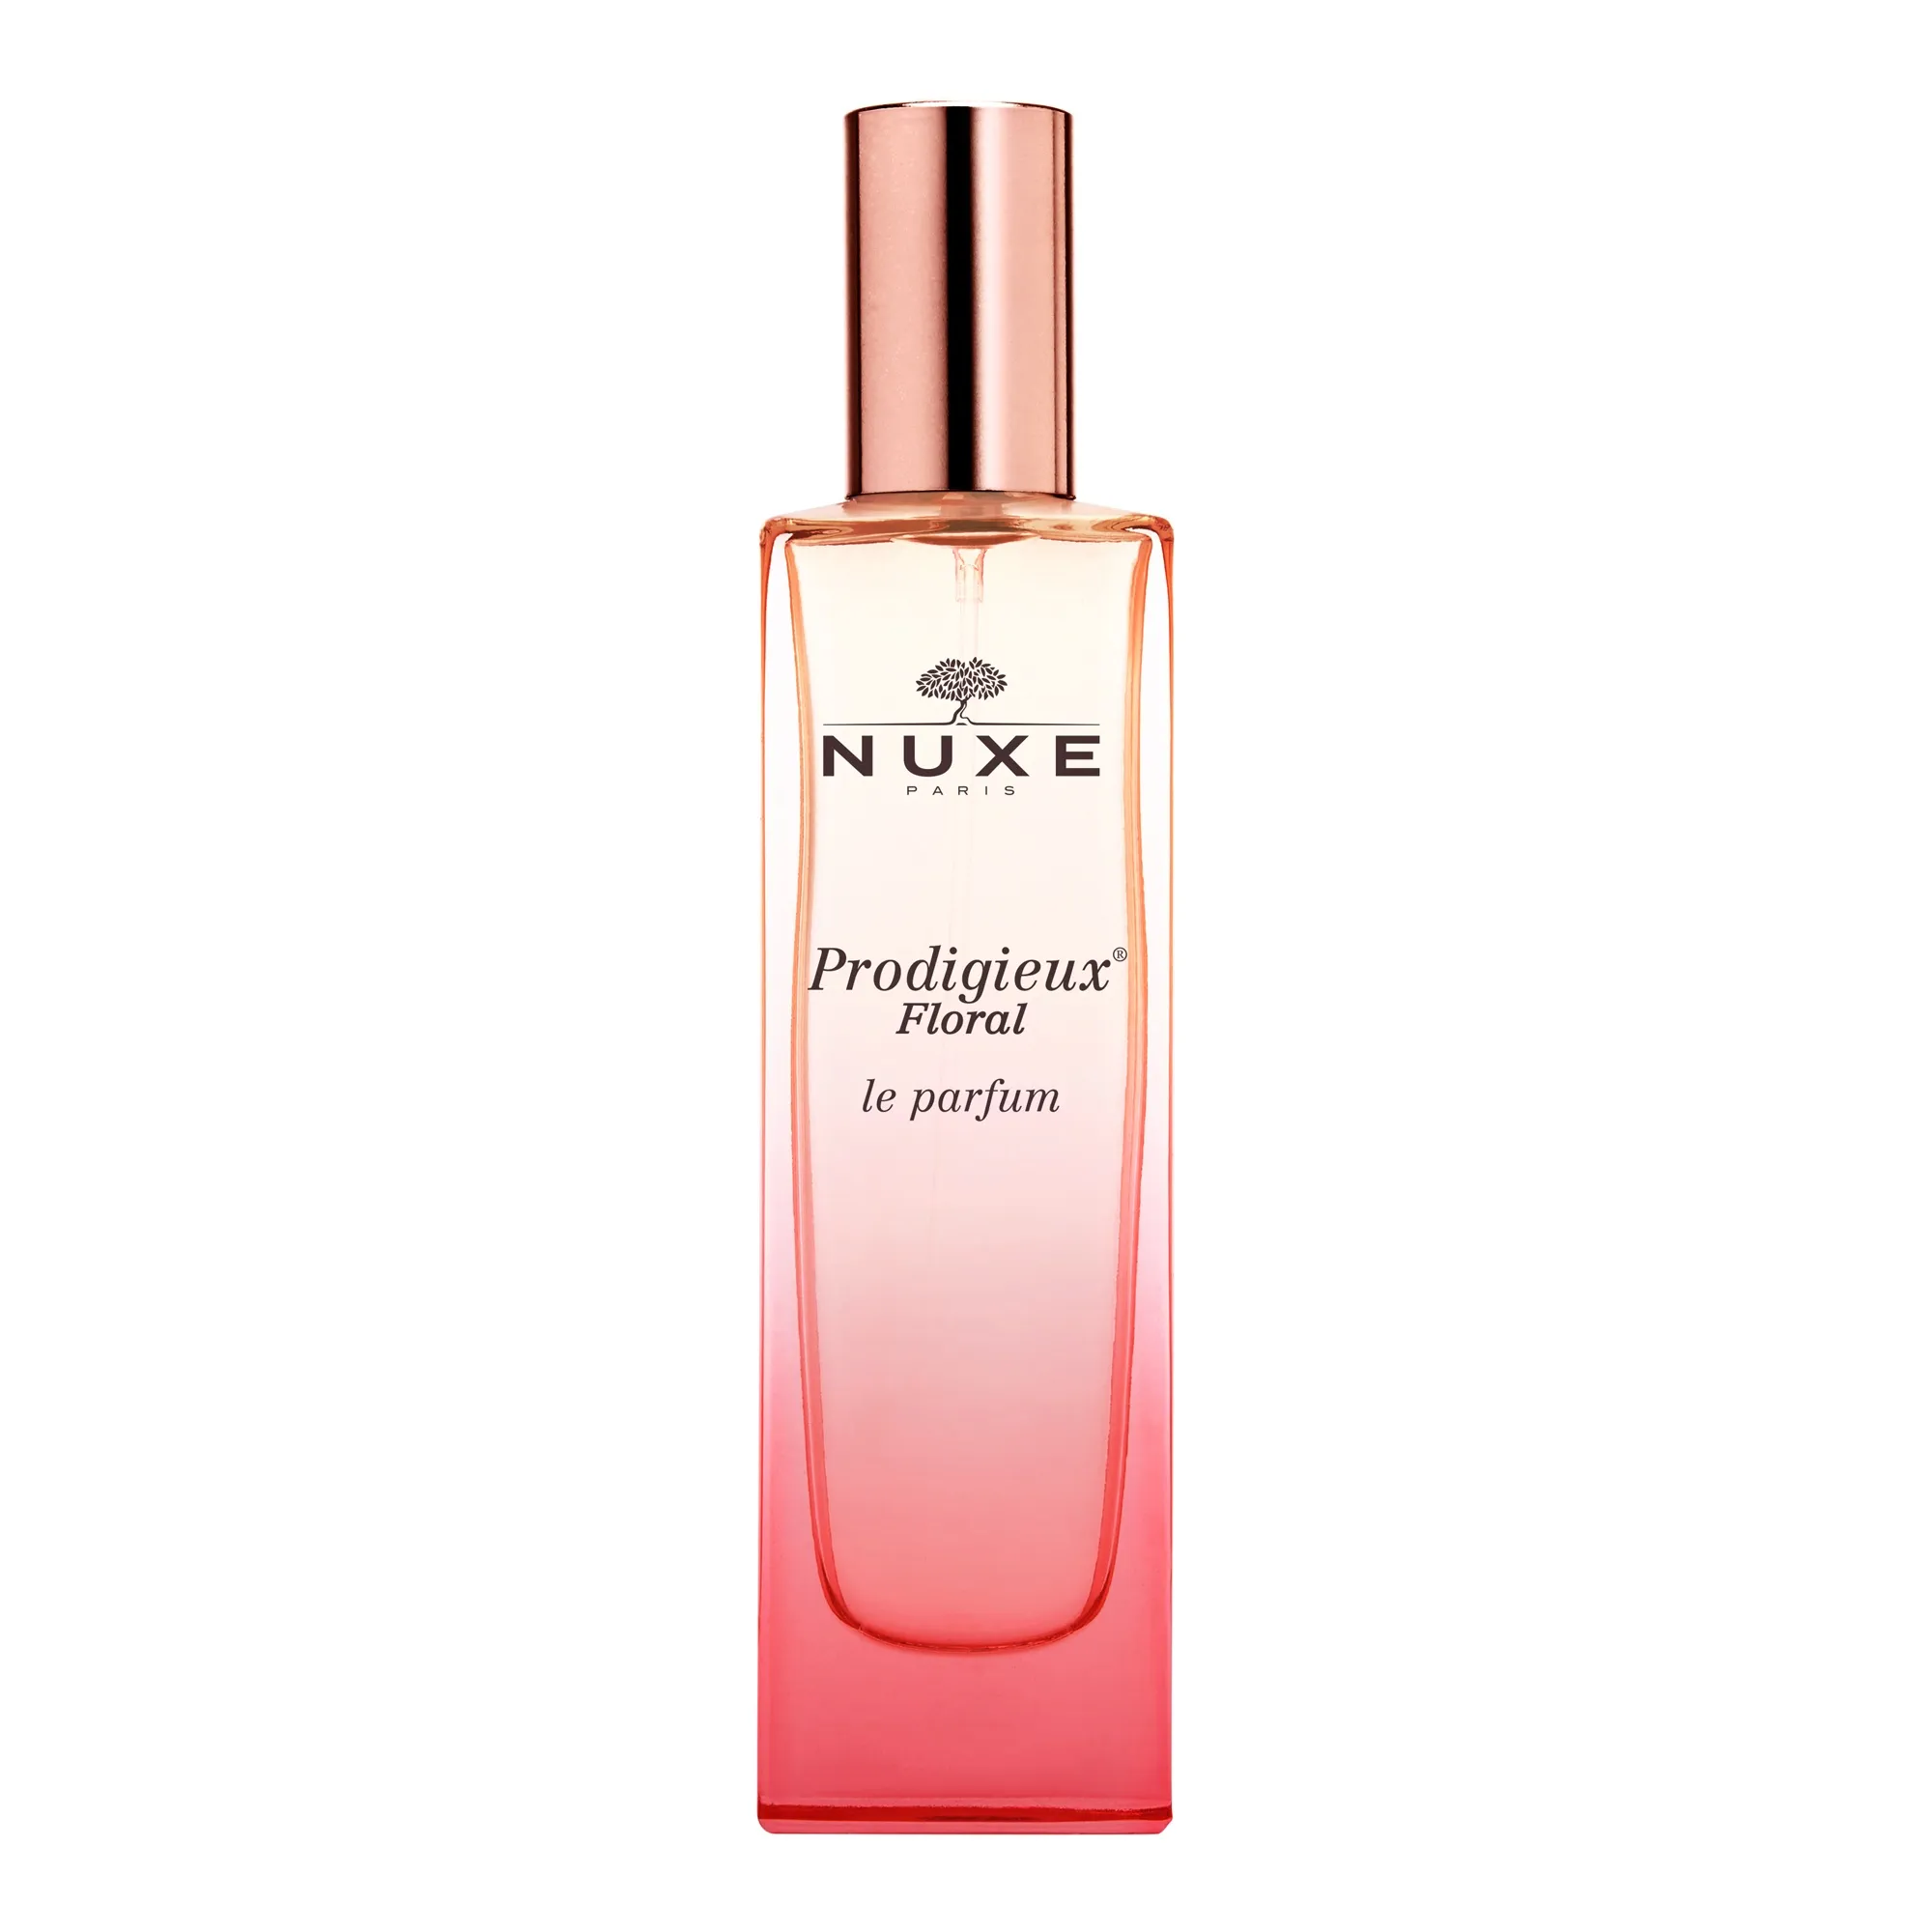 nuxe-prodigieux-floral-le-parfum-3264680022524